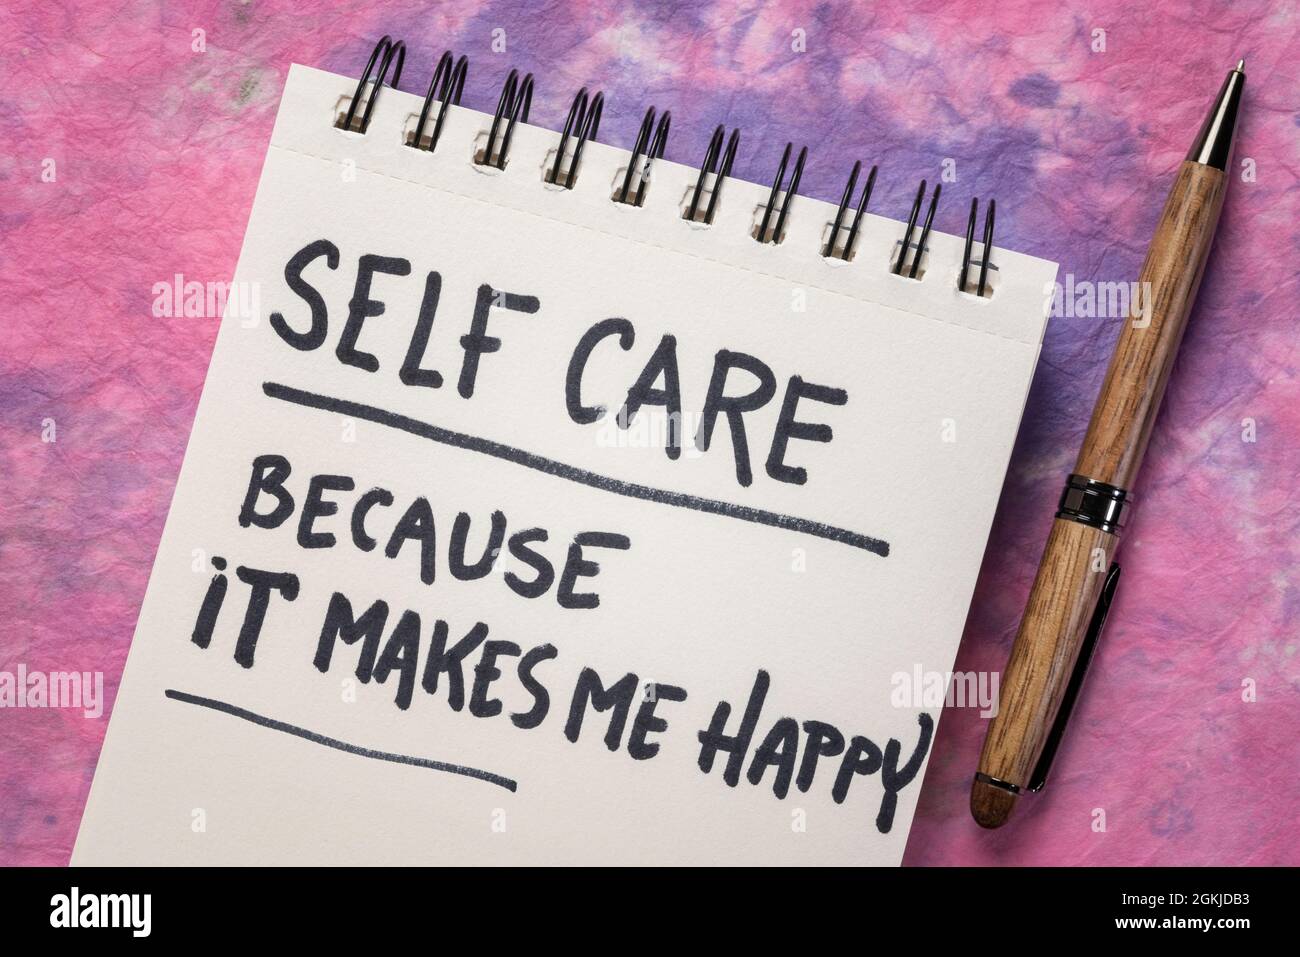 Selbstpflege, weil es mich glücklich macht - inspirierende Erinnerung, Handschrift auf einem Spiralnotizbuch, Lifestyle- und Gesundheitskonzept Stockfoto